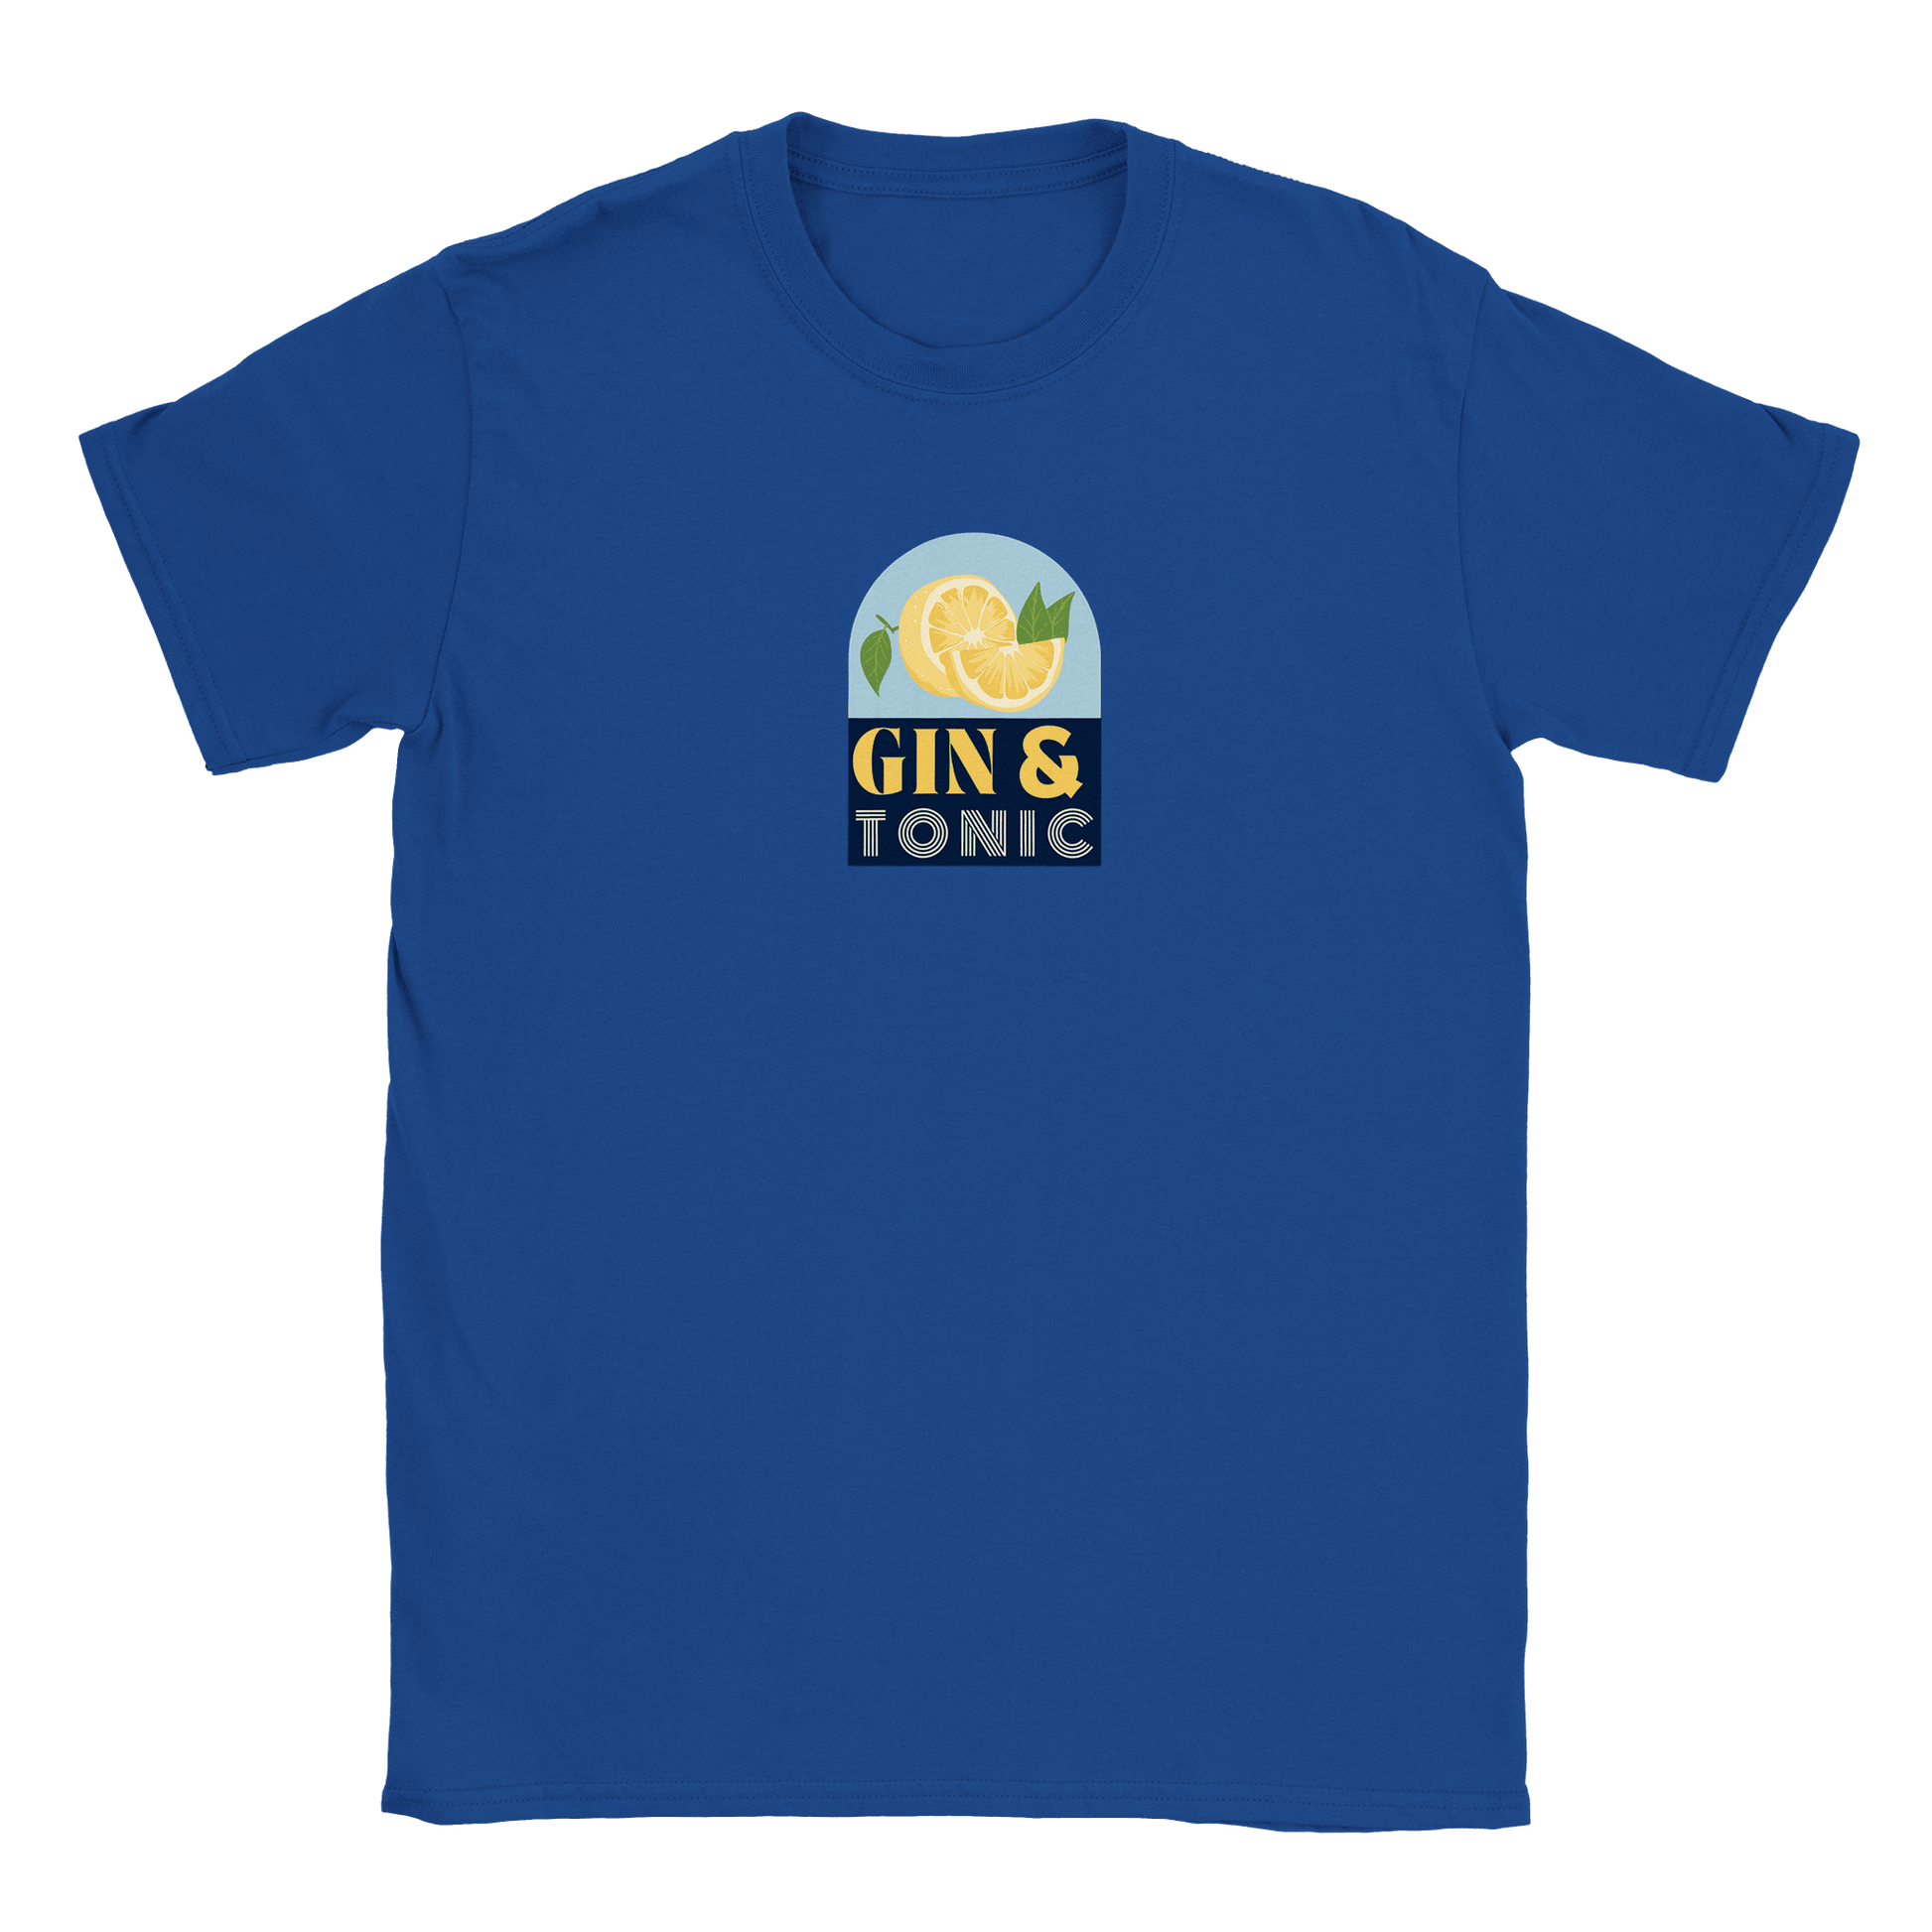 Gin & Tonic - T-shirt Blå